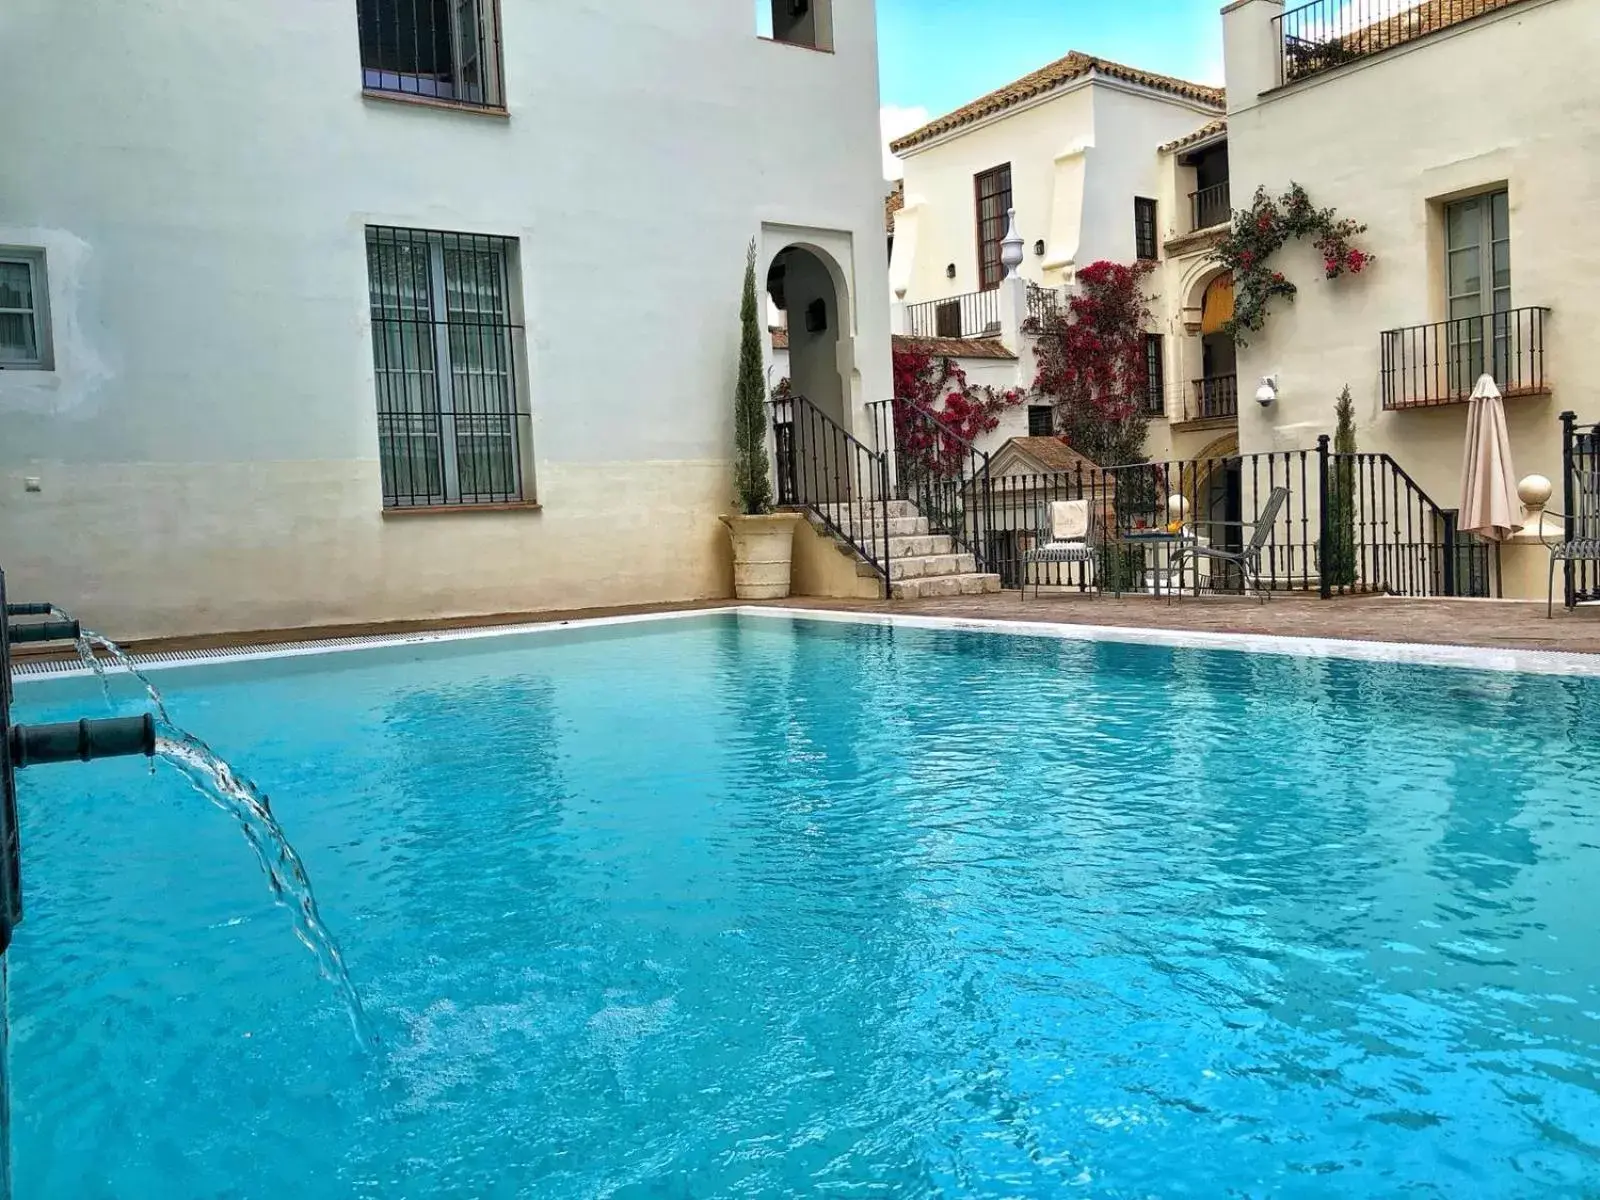 Swimming Pool in Las Casas de la Judería de Córdoba